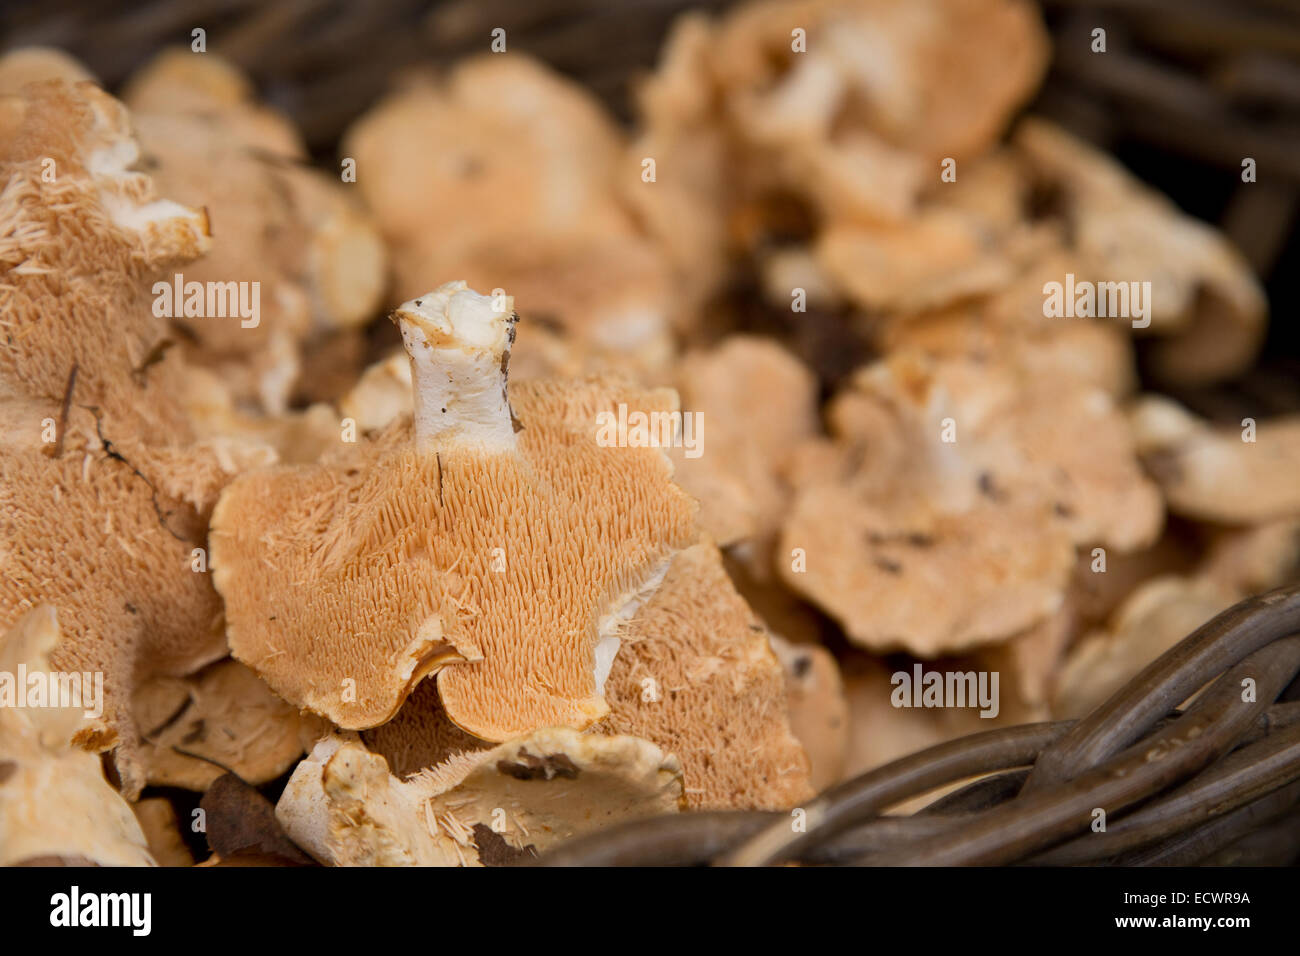 pied de mouton or hedgehog mushrooms. Stock Photo